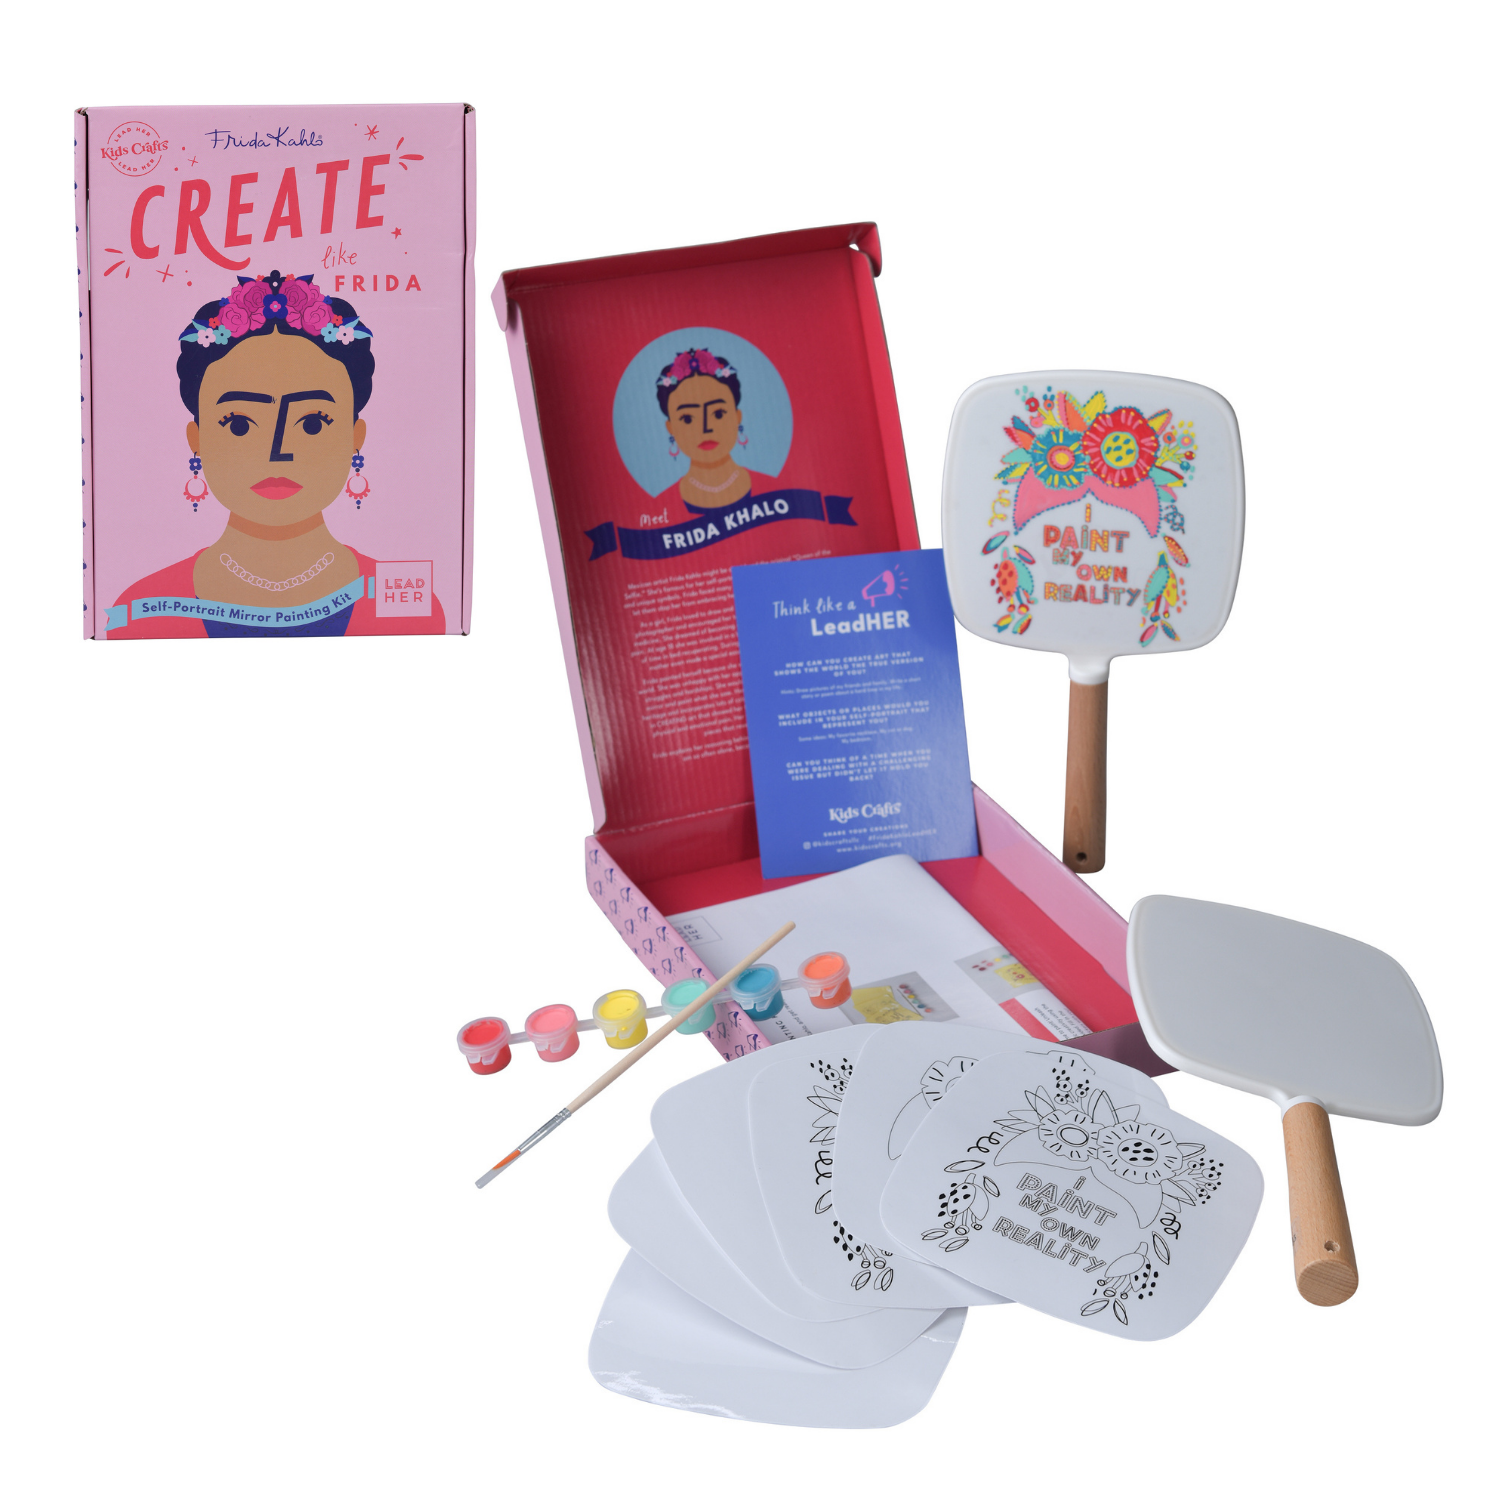 CREATE like Frida Self-Portrait Mirror Painting Craft Kit